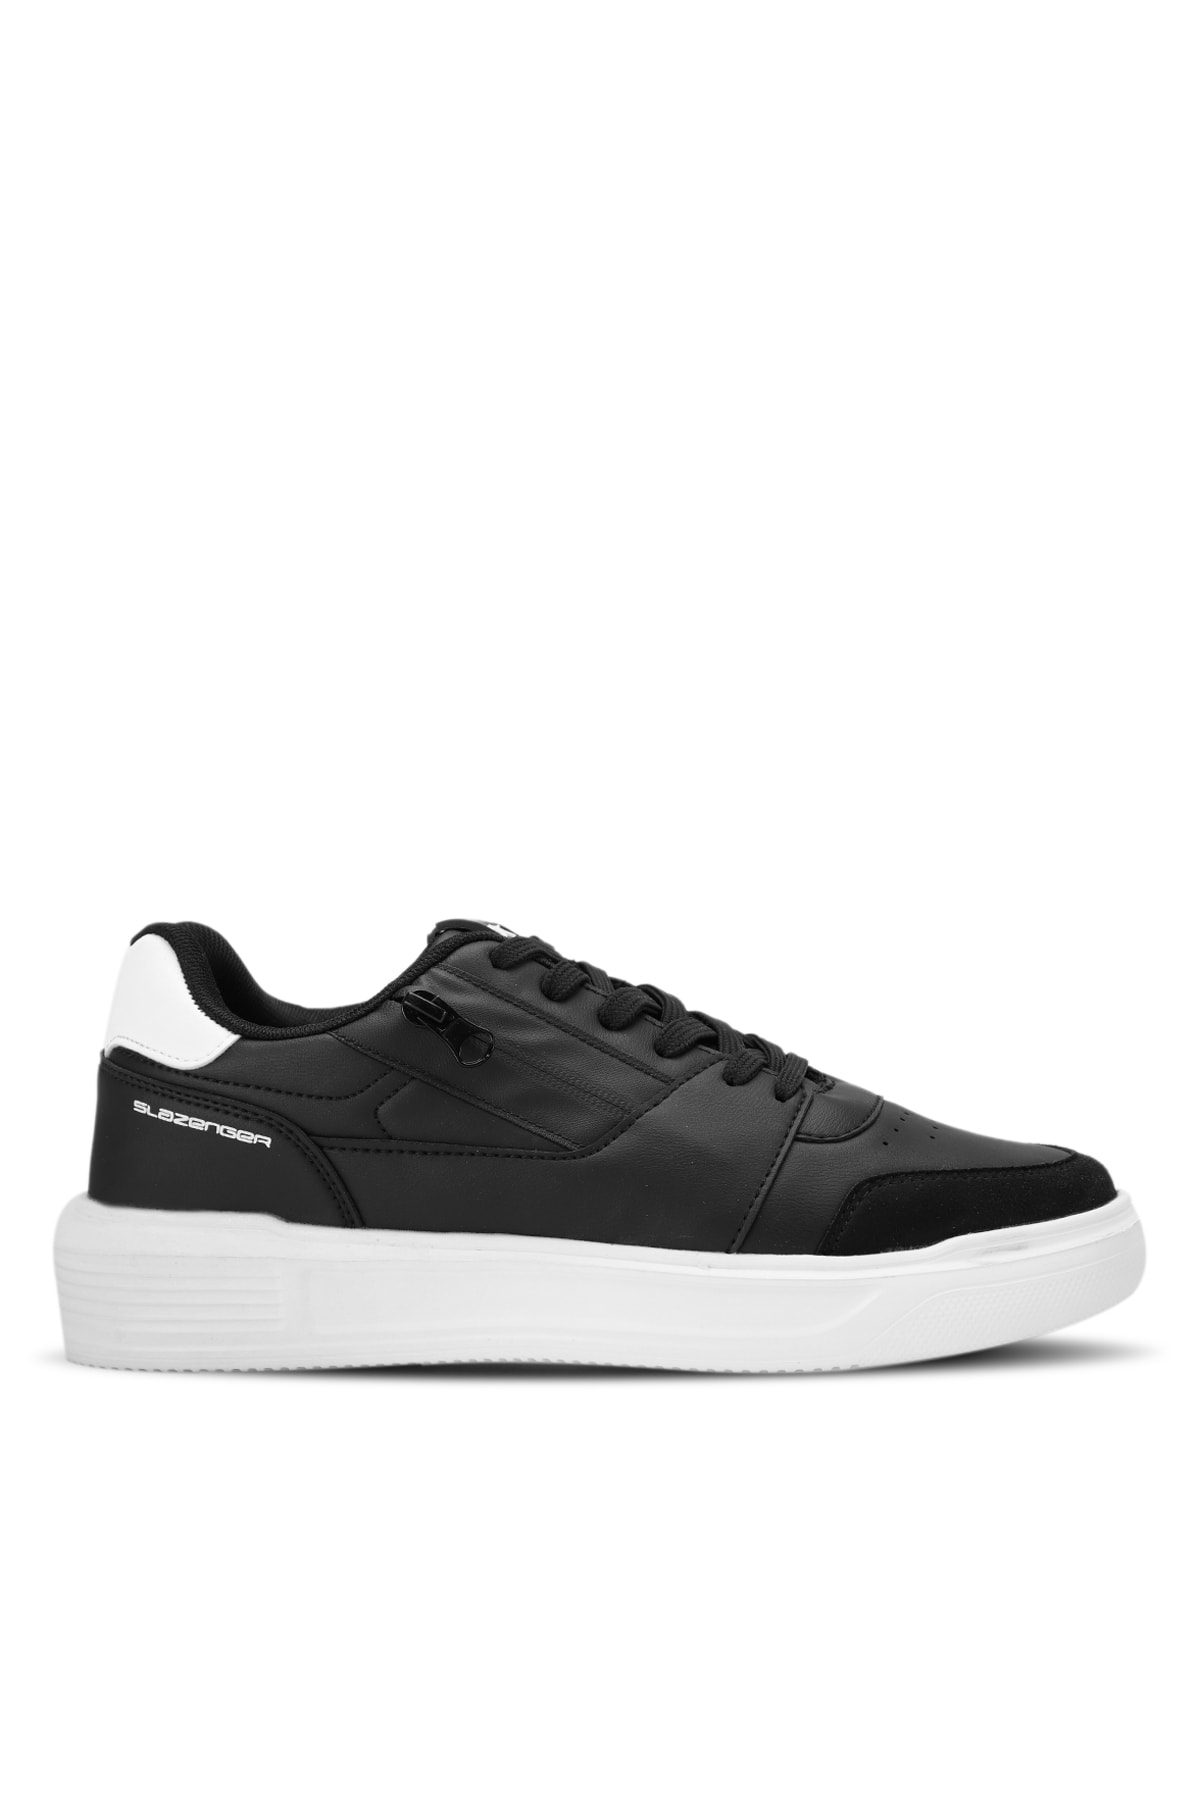 Levně Slazenger LABEL Sneakers Pánské boty černo/bílé